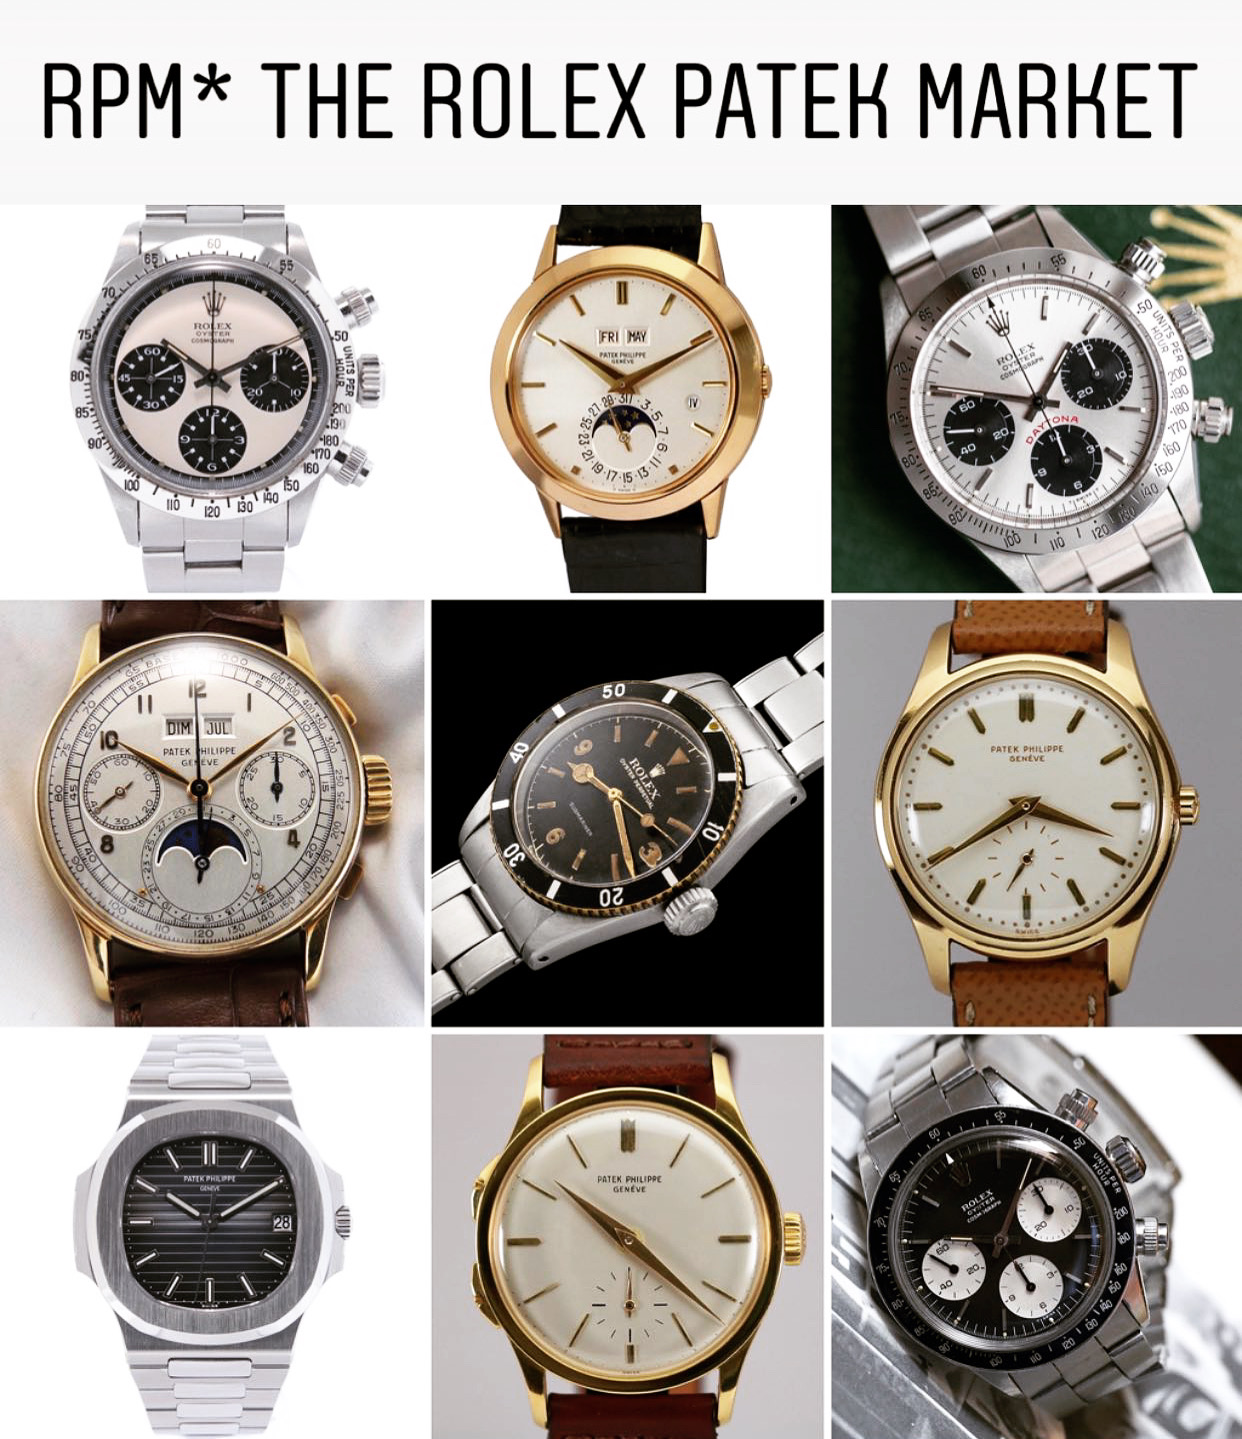 Buy at RPM* The Rolex Patek Market 